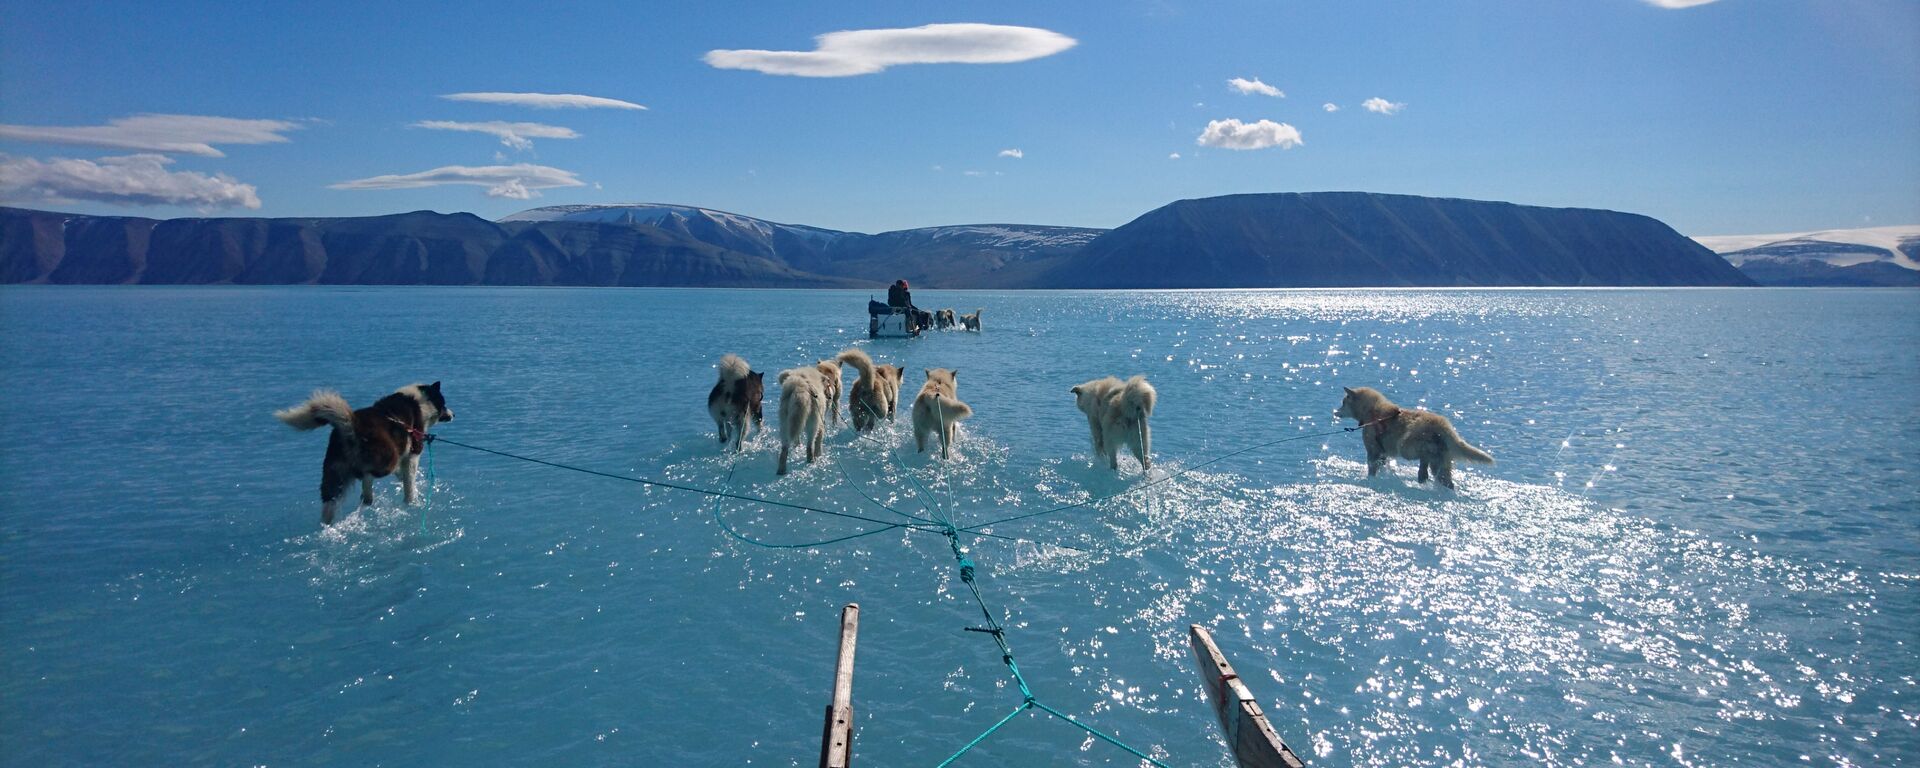 Ездовые собаки тянут сани по покрытому водой льду Гренландии - Sputnik Узбекистан, 1920, 30.06.2019